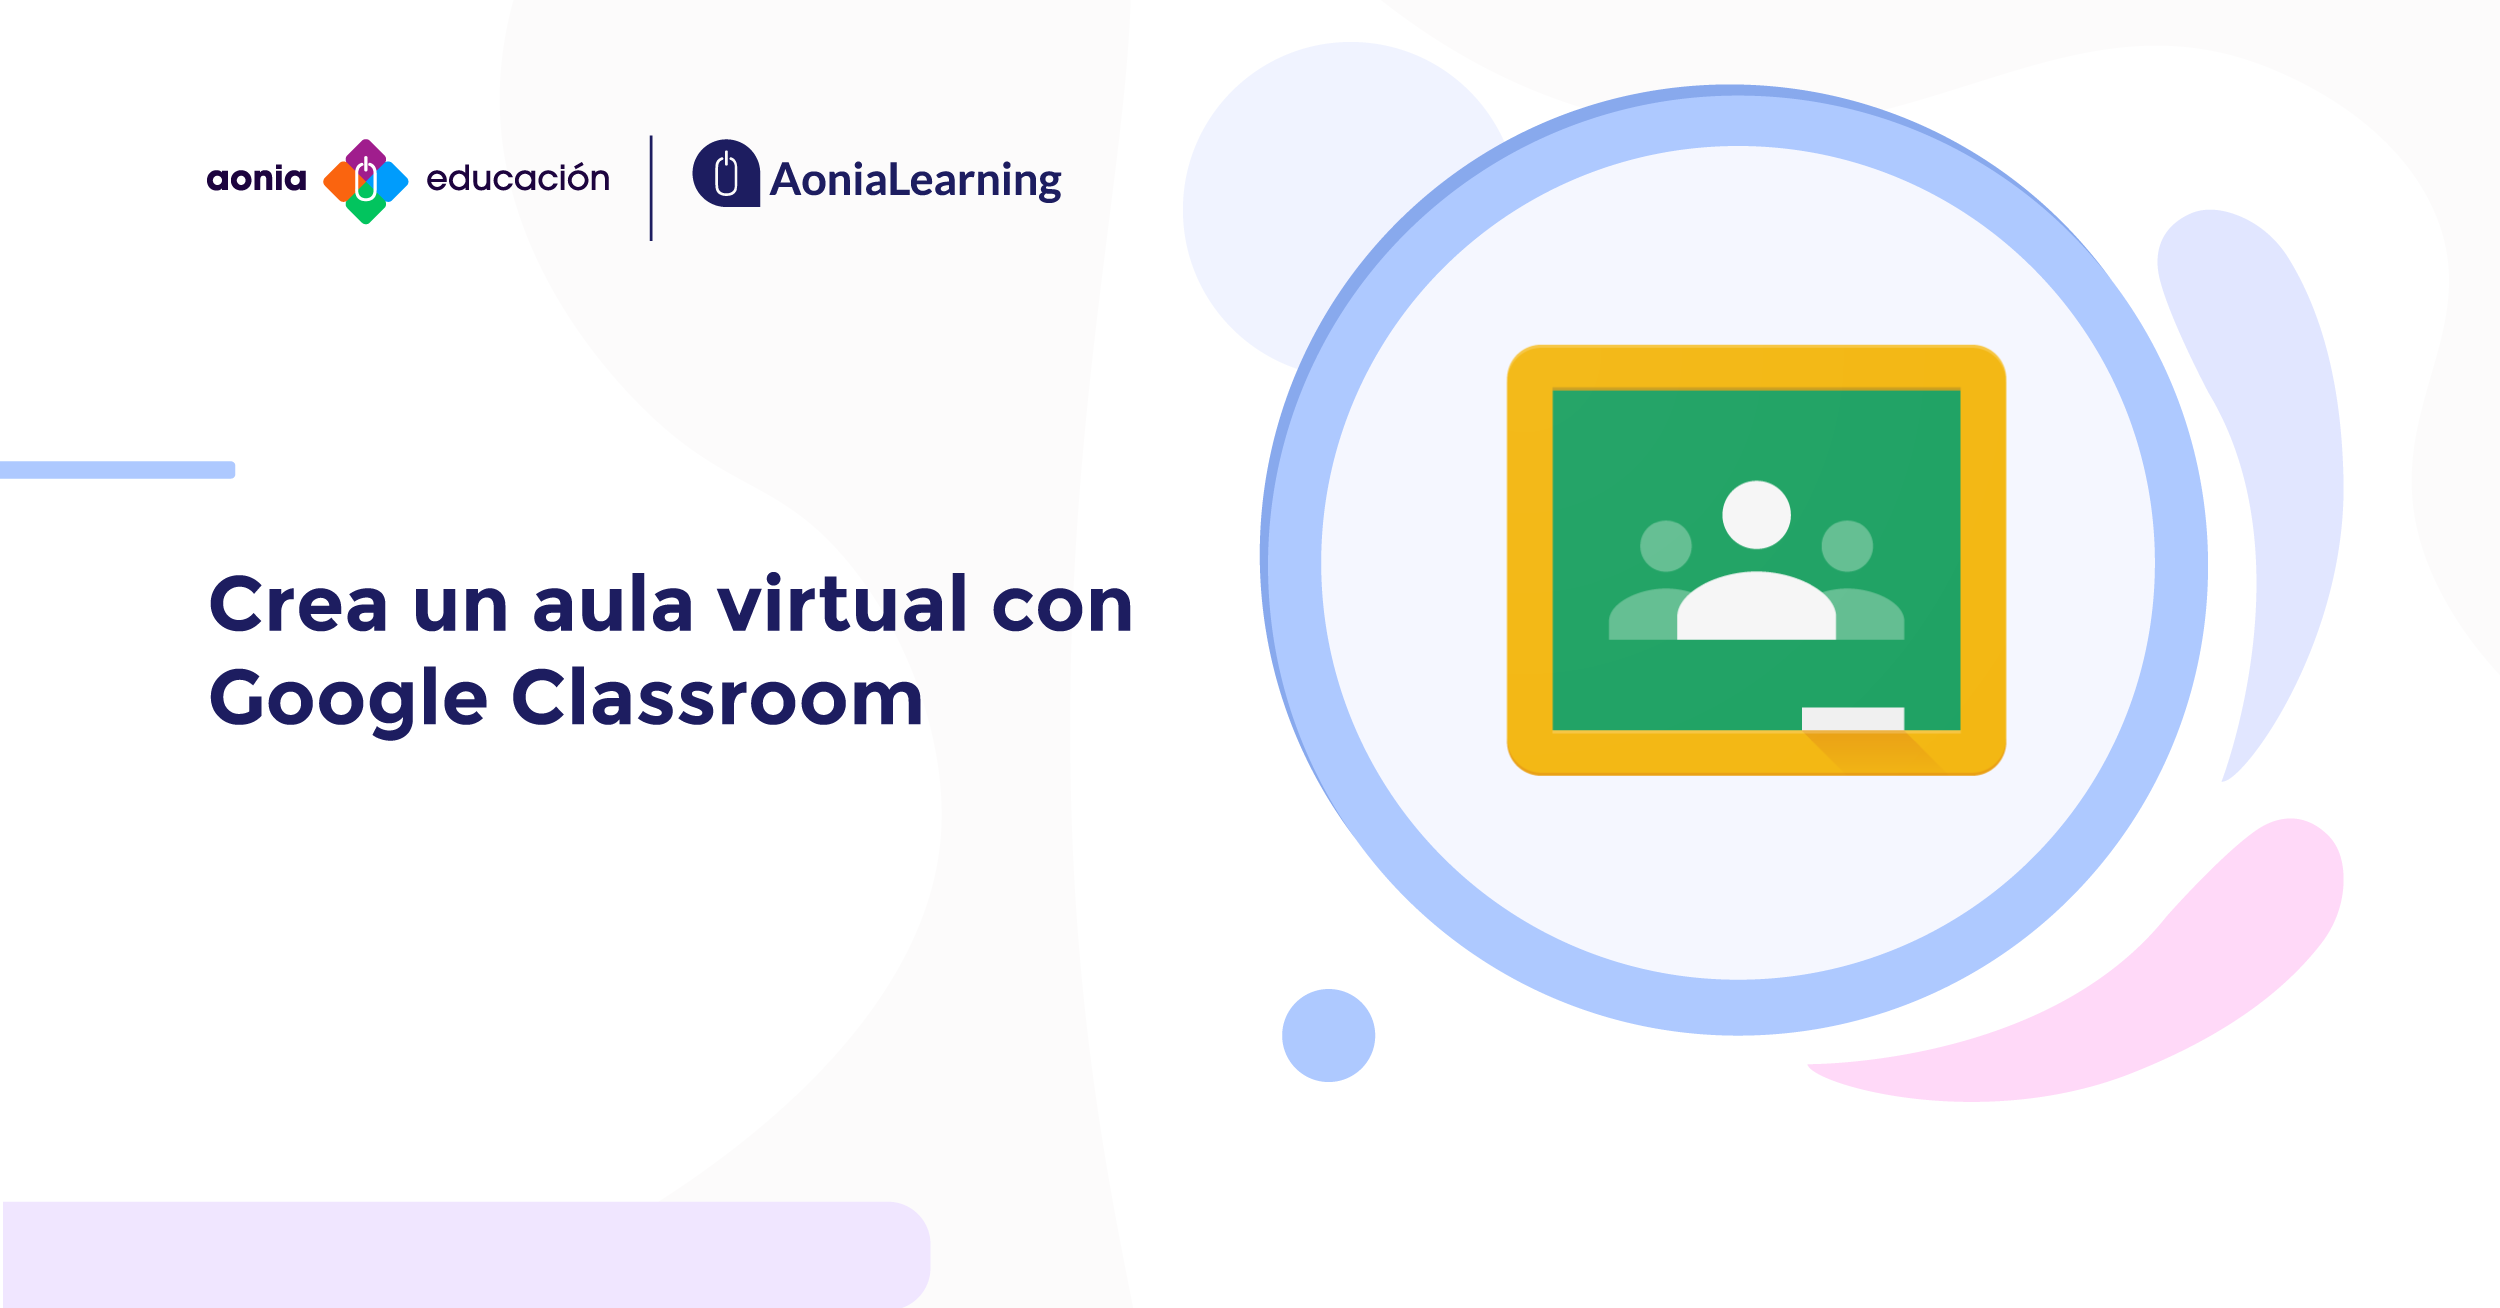 Crea un aula virtual con Google Classroom